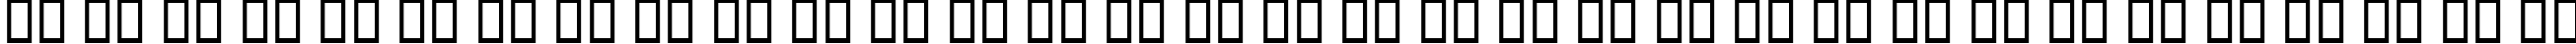 Пример написания русского алфавита шрифтом B Tabassom